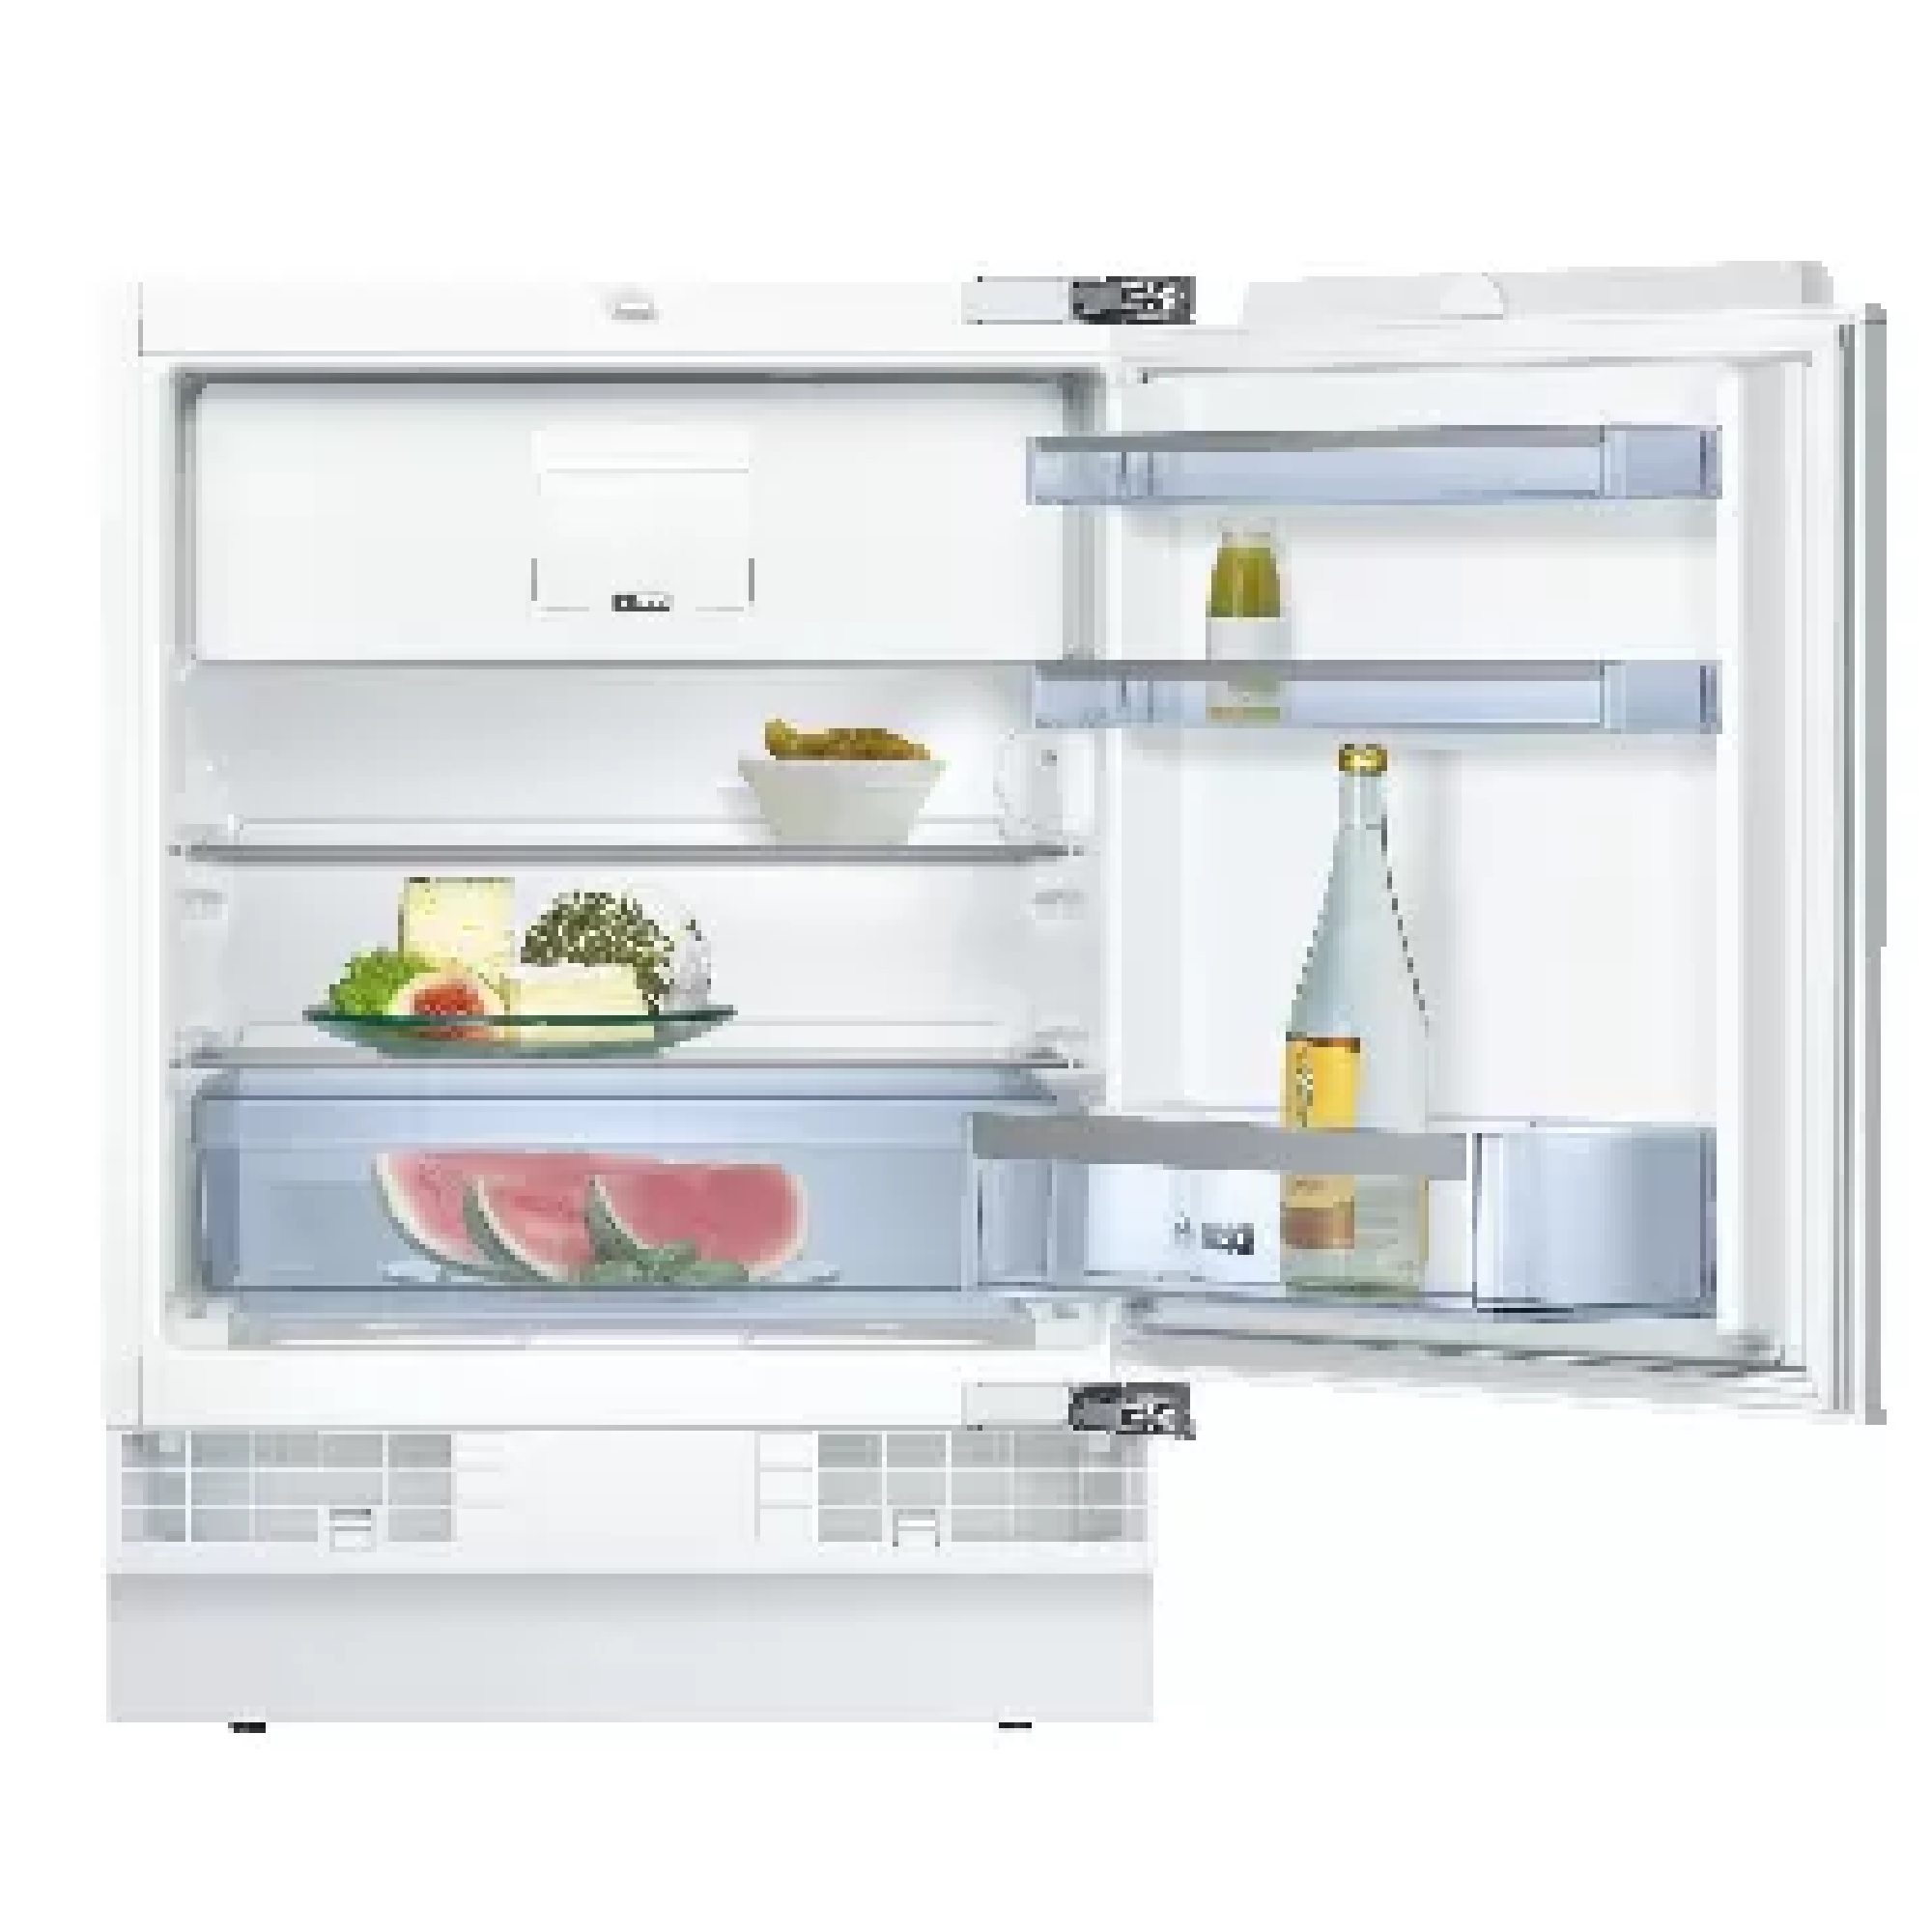 Встраиваемые холодильники ру. Холодильник Bosch kur15a50. Встраиваемый холодильник Bosch kur15a65. Холодильник Neff k4316x7ru. Встраиваемый холодильник Bosch kul15a50.